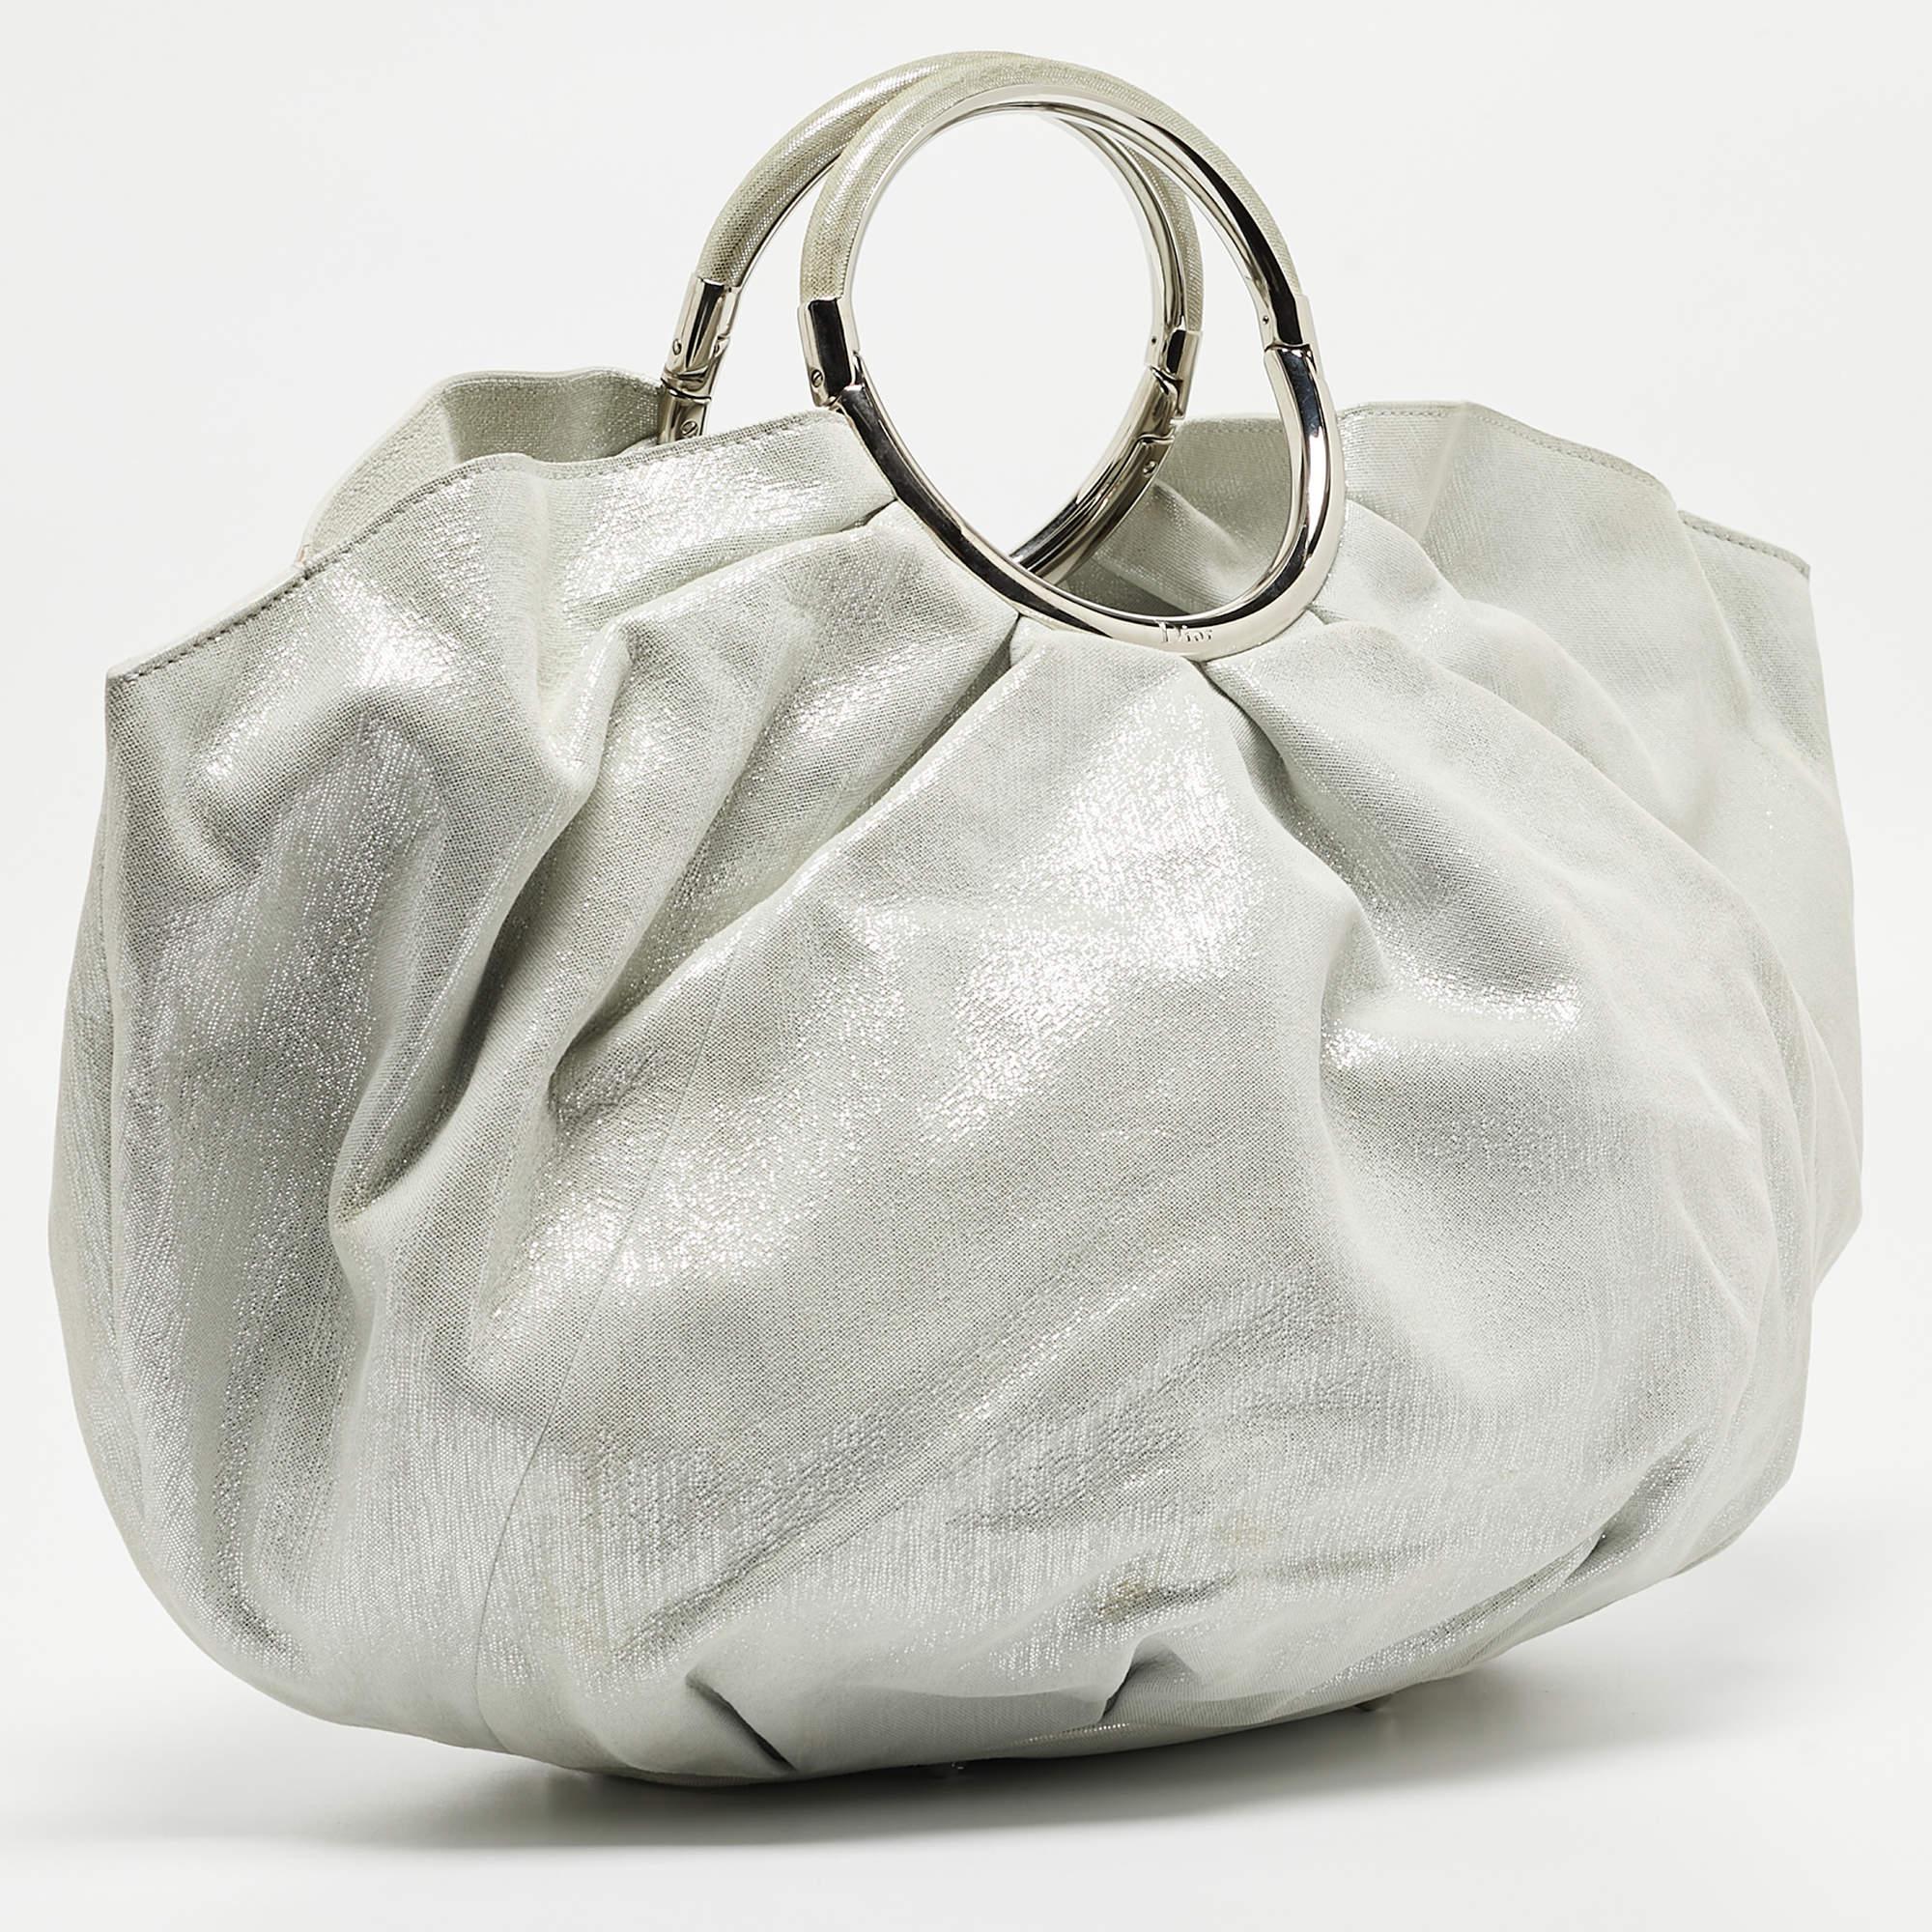 Ce hobo de Fendi est un bon choix si vous cherchez un sac pour tous les jours. Confectionné en daim chatoyant, le sac est maintenu par deux anses rondes. Son intérieur spacieux est doublé de nylon.

